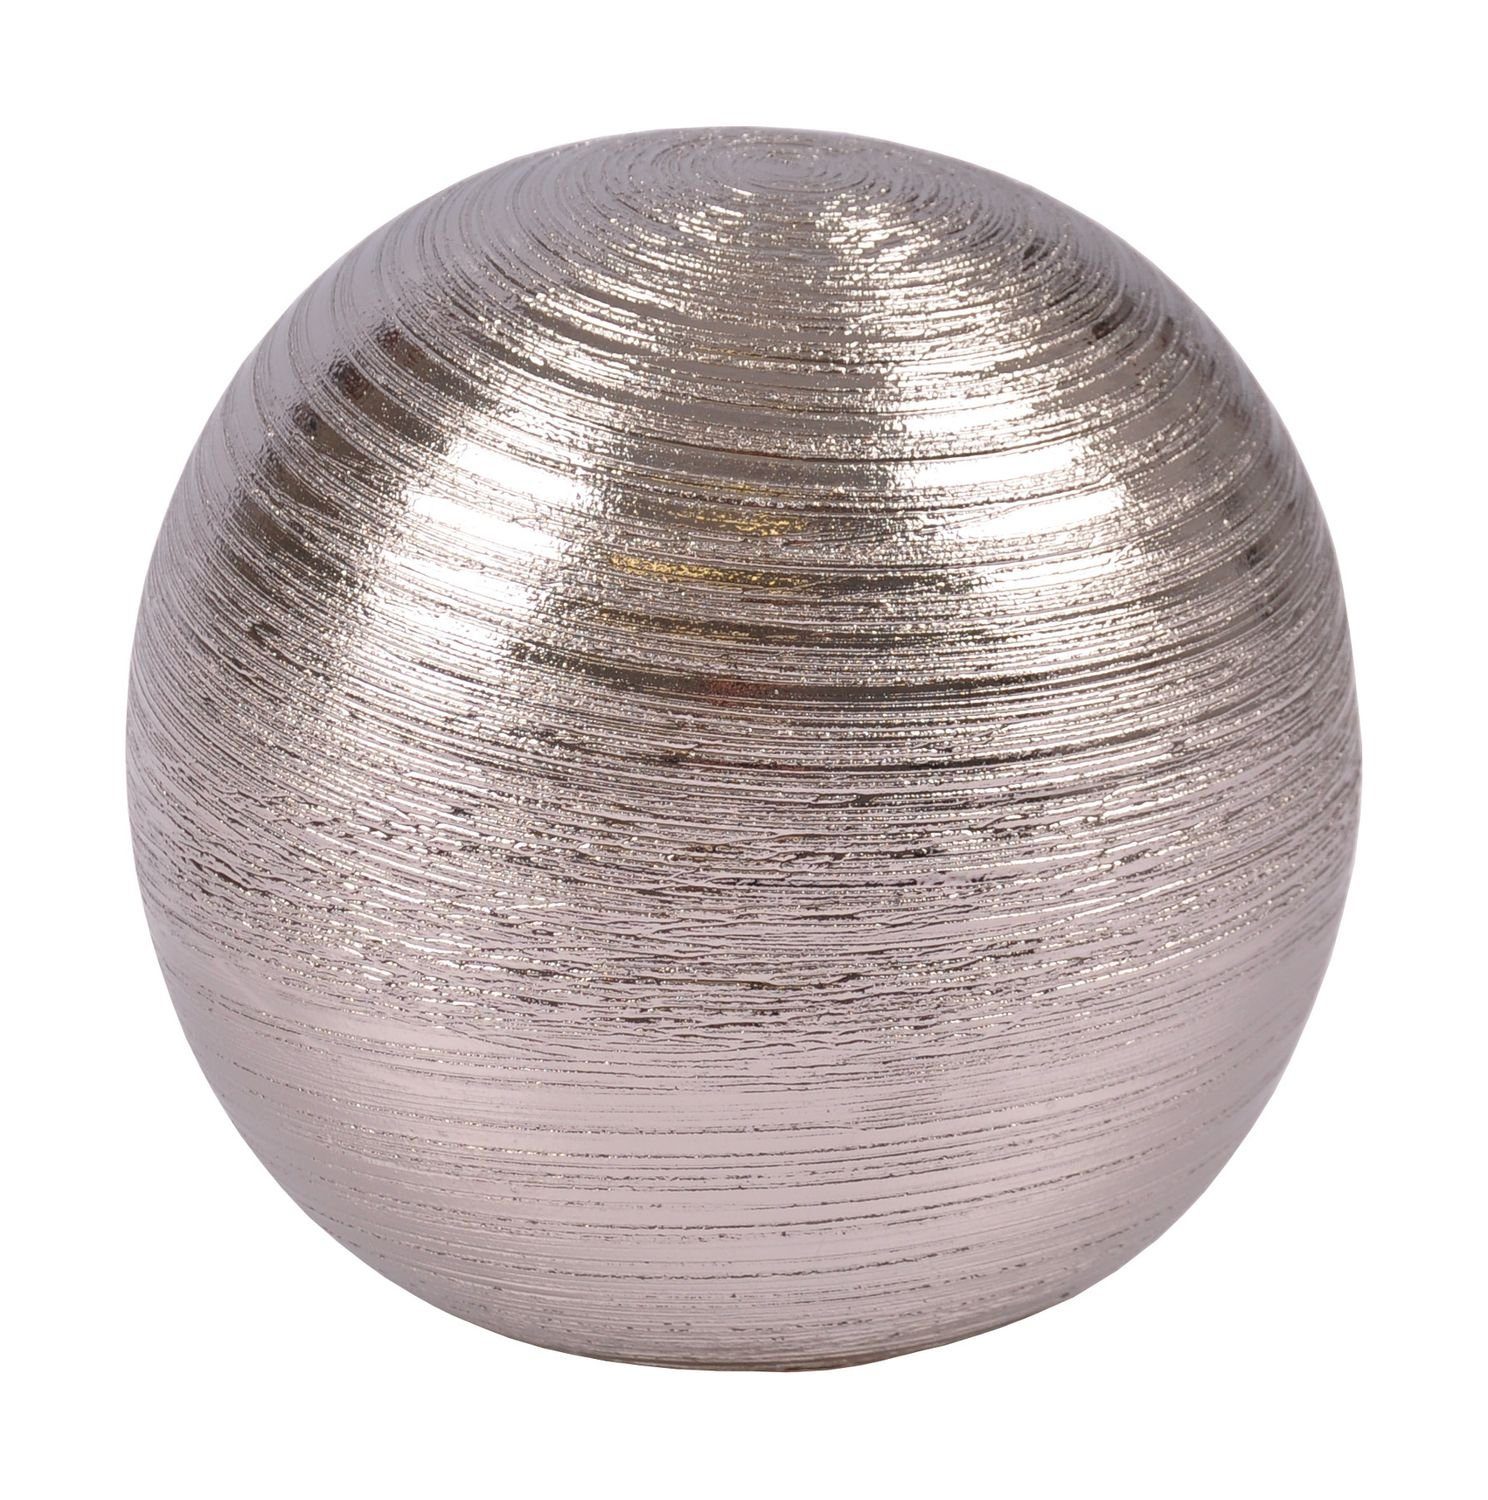 Keramik aus silber Dekokugel Dekofigur Dekofigur 12,5cm Ku New Tischdeko Silberkugel Home